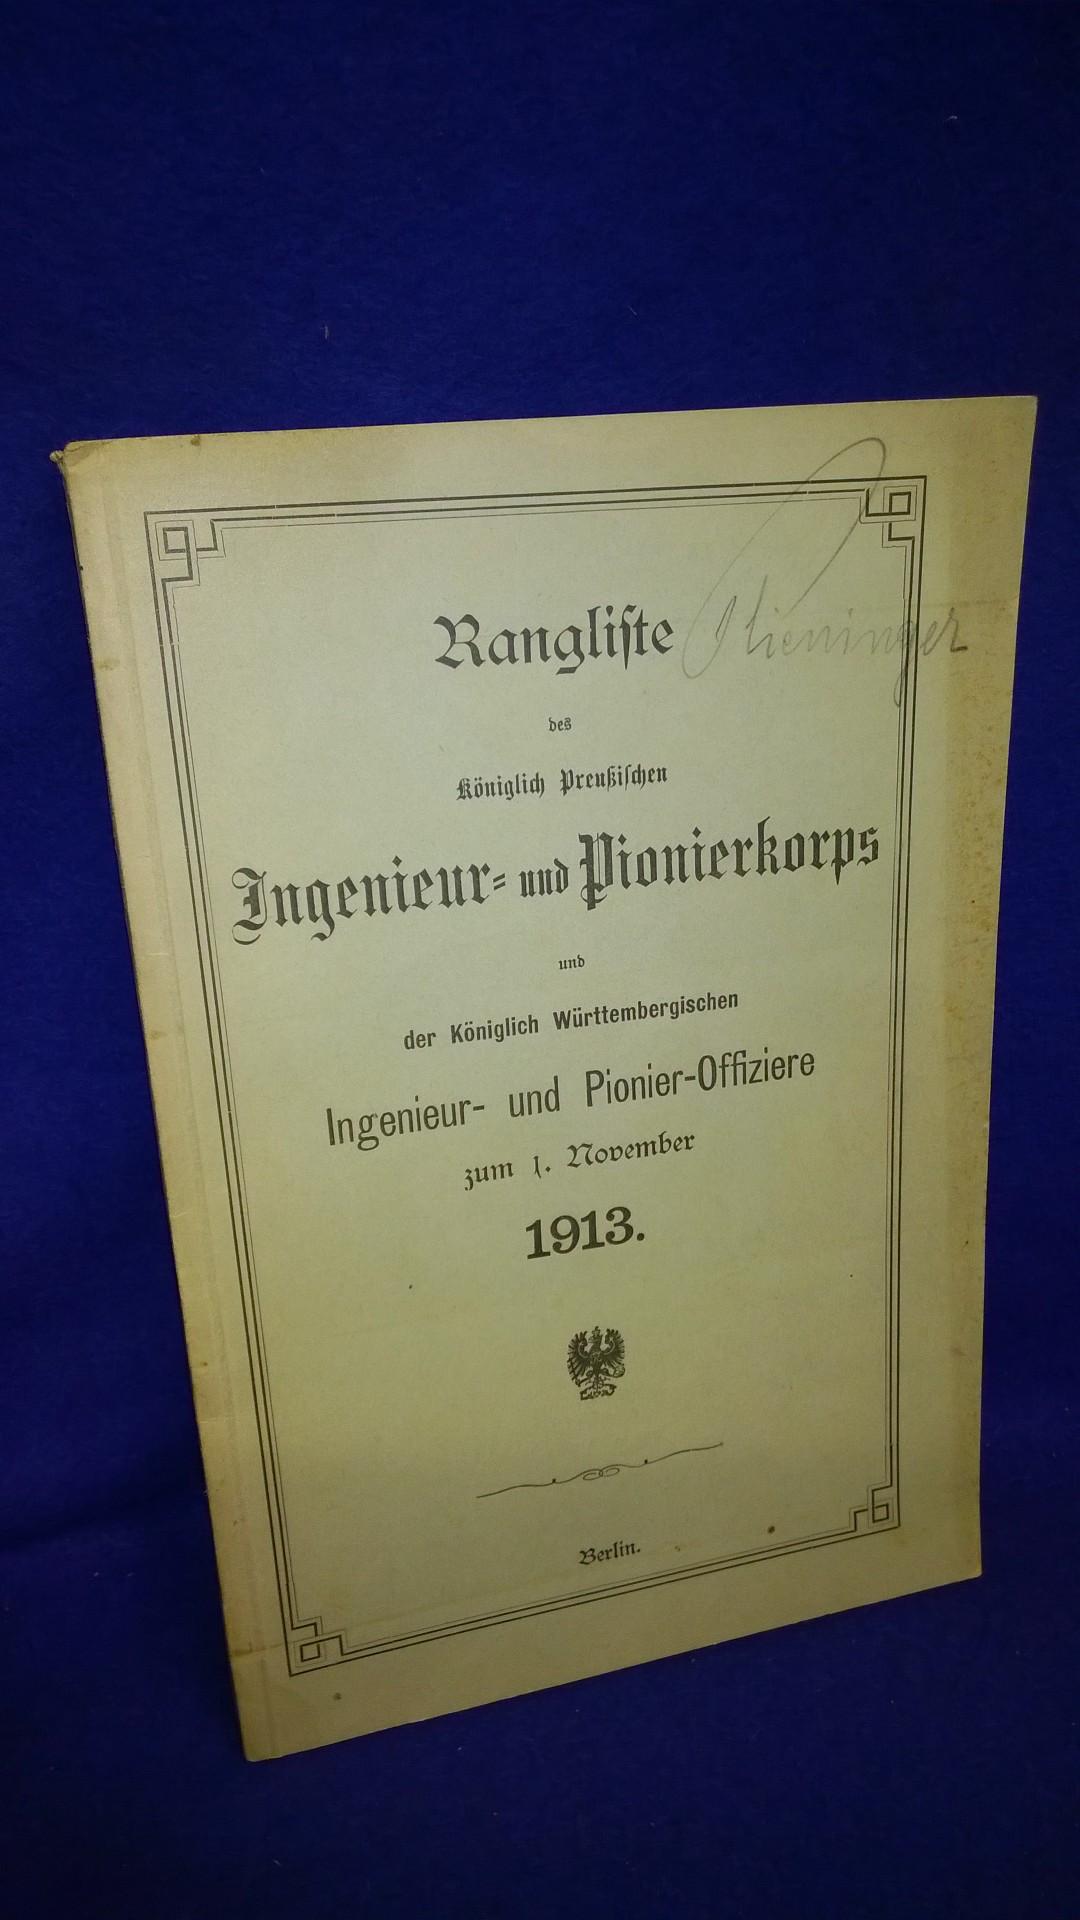 Rangliste des Königlich Preußischen Ingenieur- und Pionierkorps und der Königlich Württembergischen Ingenieur- und Pionier-Offiziere zum 1.November 1913.